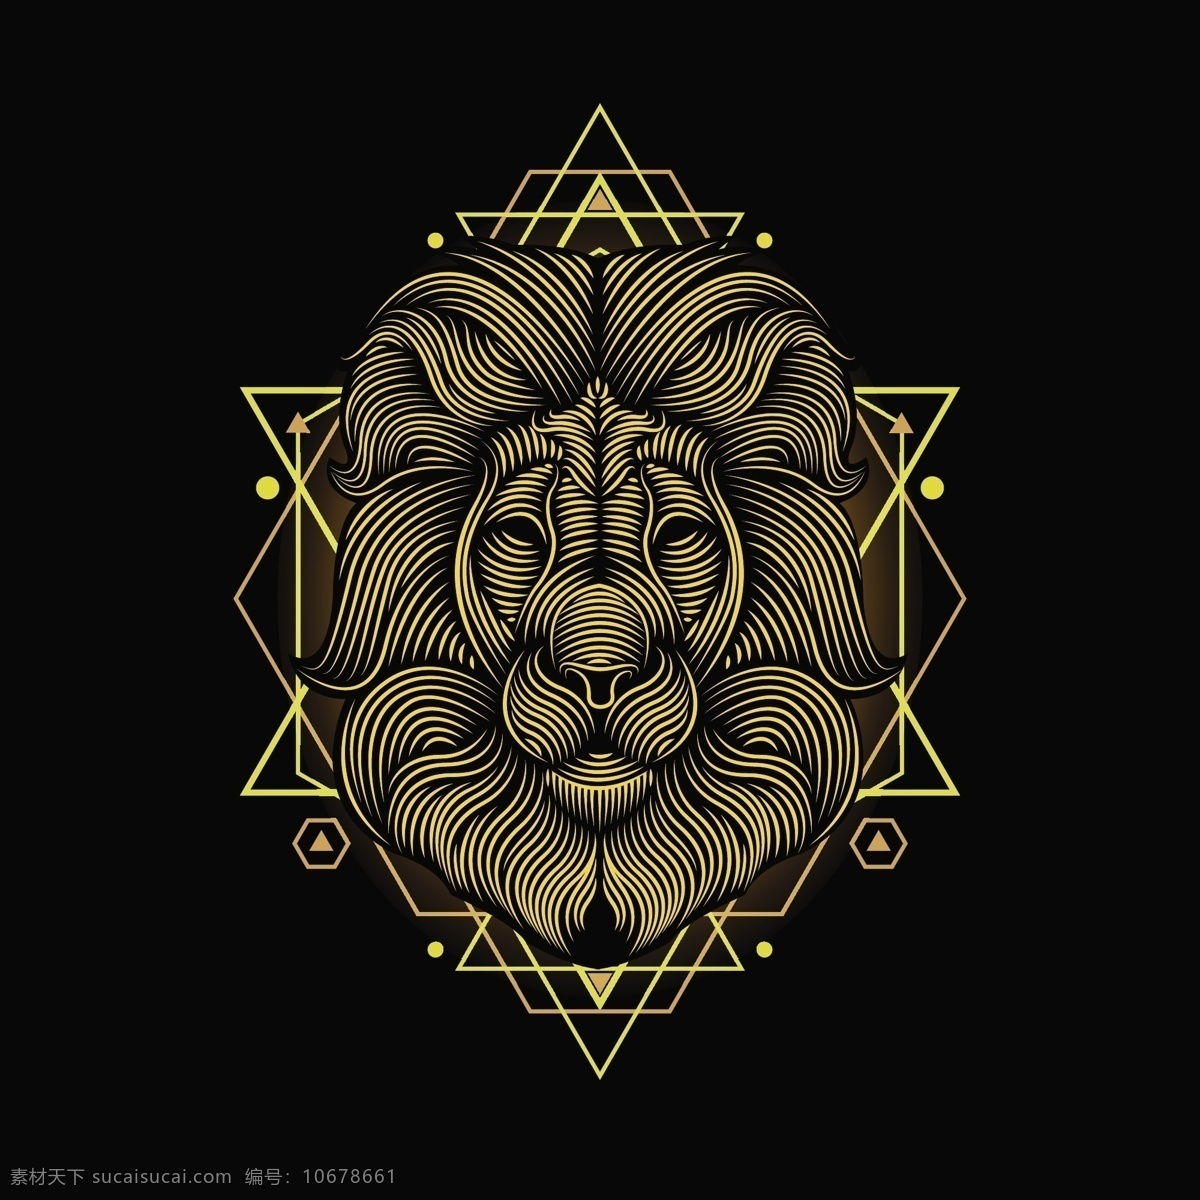 矢量 金色 线条 狮子王 矢量狮子王 金色线条狮子 狮子头 狮子头部 狮子面部 线条绘画 金色狮子 动物logo 狮子logo 帝王logo 图标 标志图标 其他图标